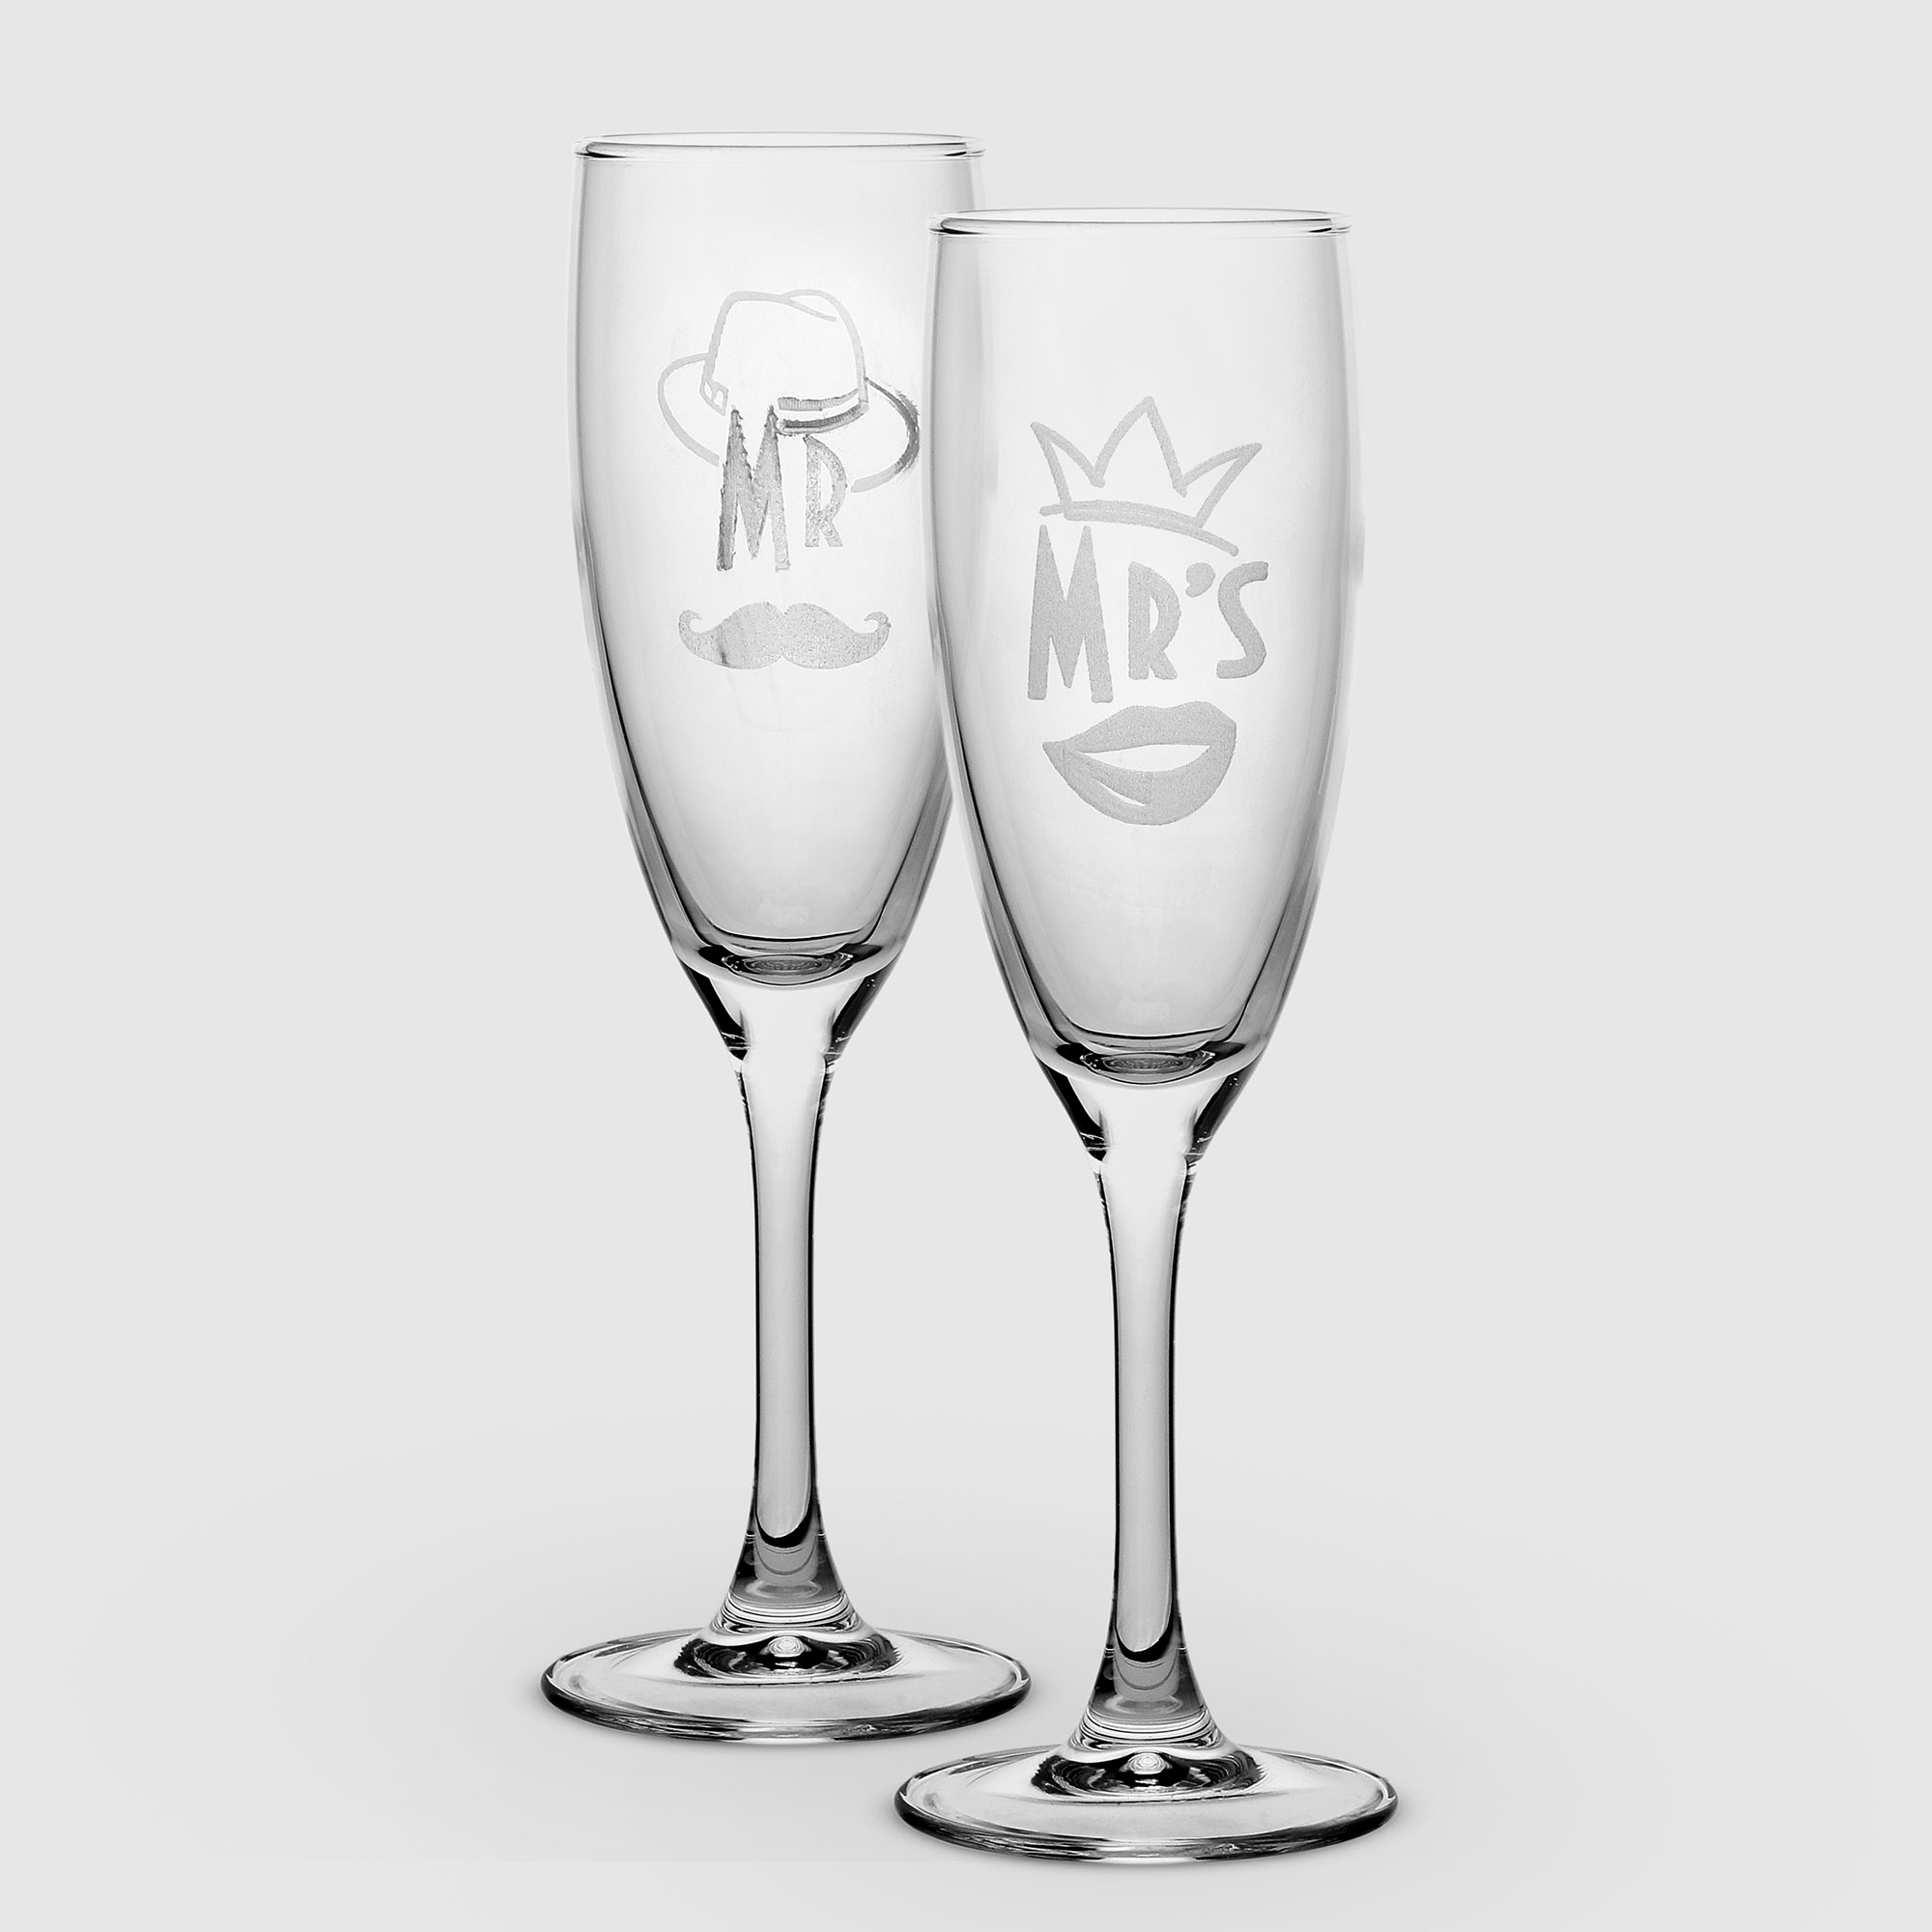 набор бокалов для шампанского комфилюкс эдем mr Набор бокалов для шампанского Комфилюкс Эдем Mr&Mrs 170 мл 2 шт